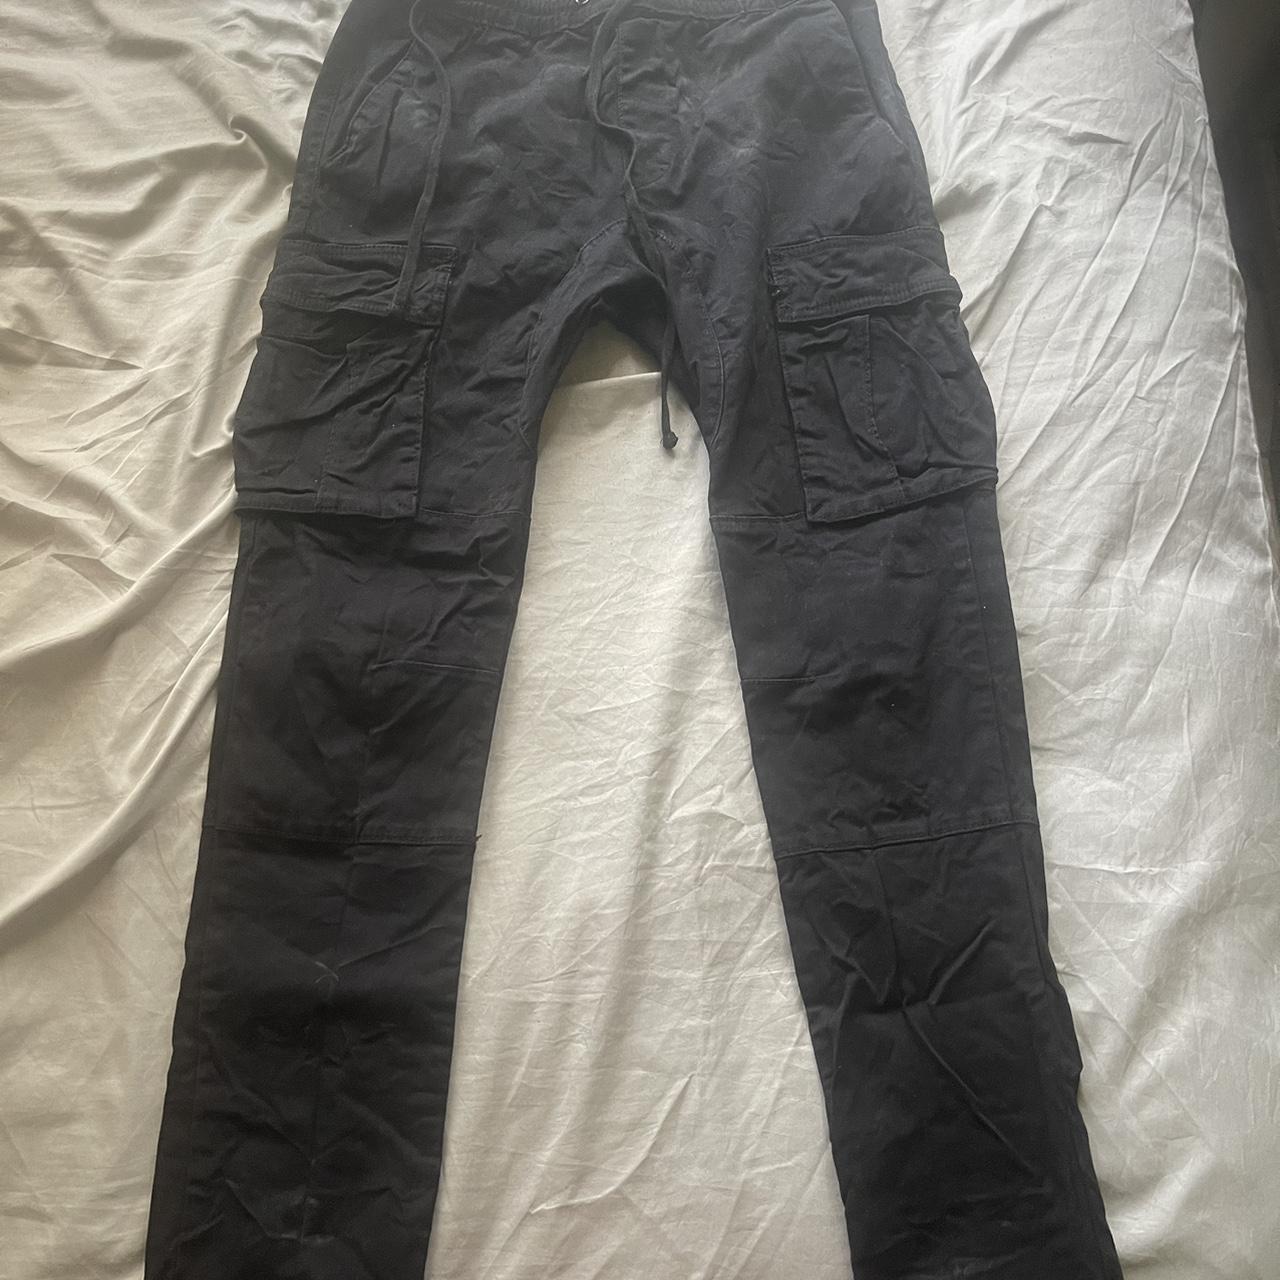 Super cute black cargo pacsun jeans size 25 no flaws - Depop